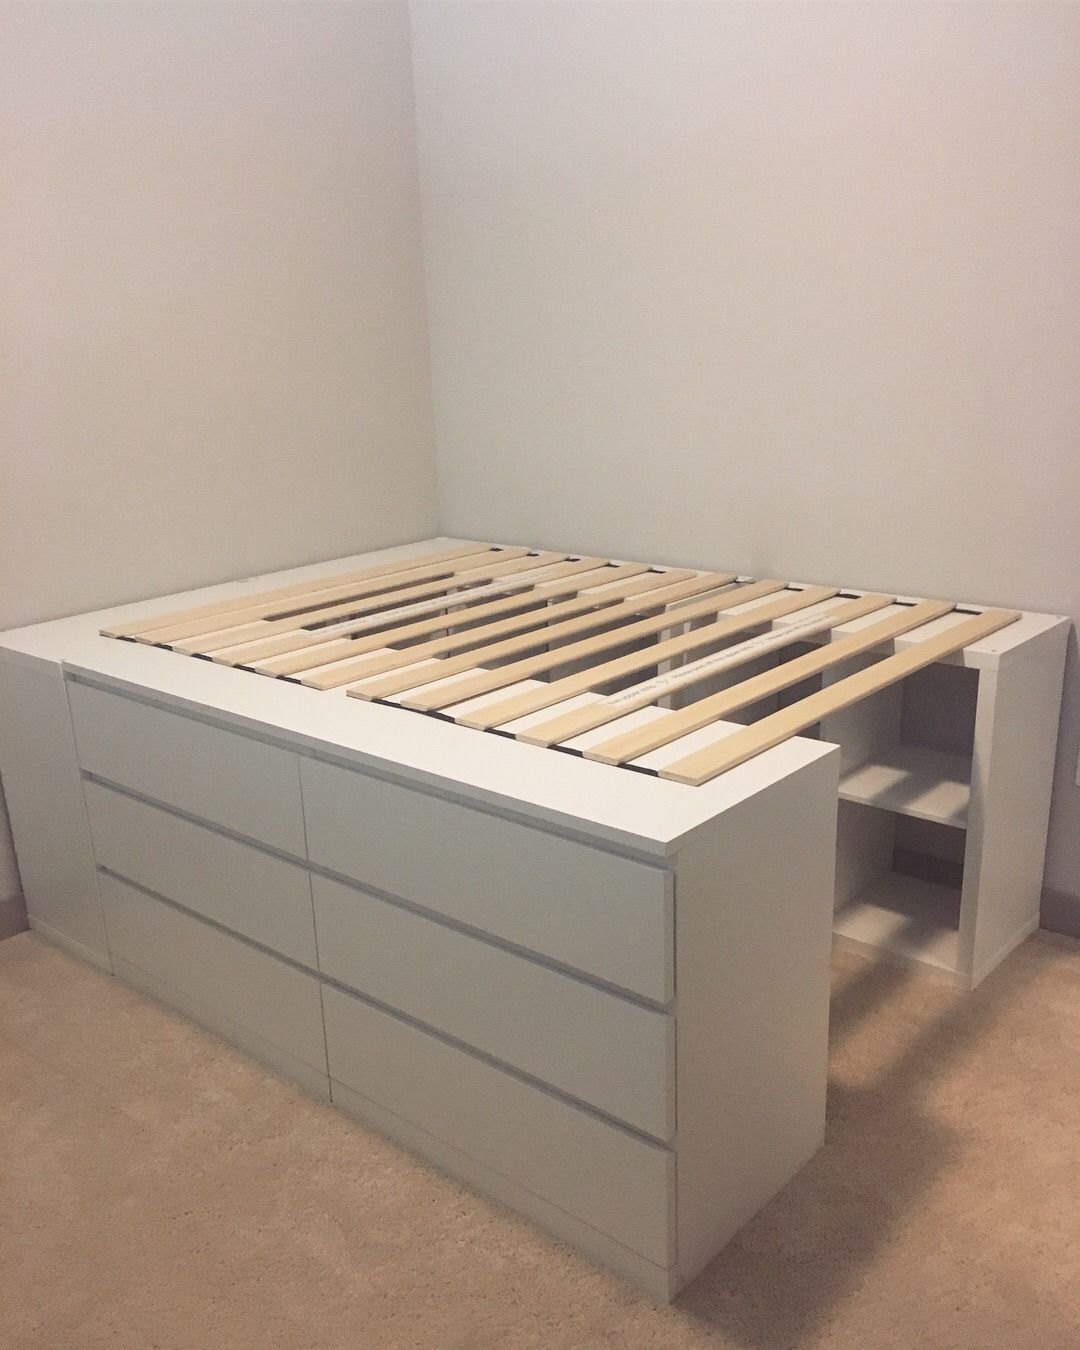 Get some designer platform storage beds
for your bedrooms